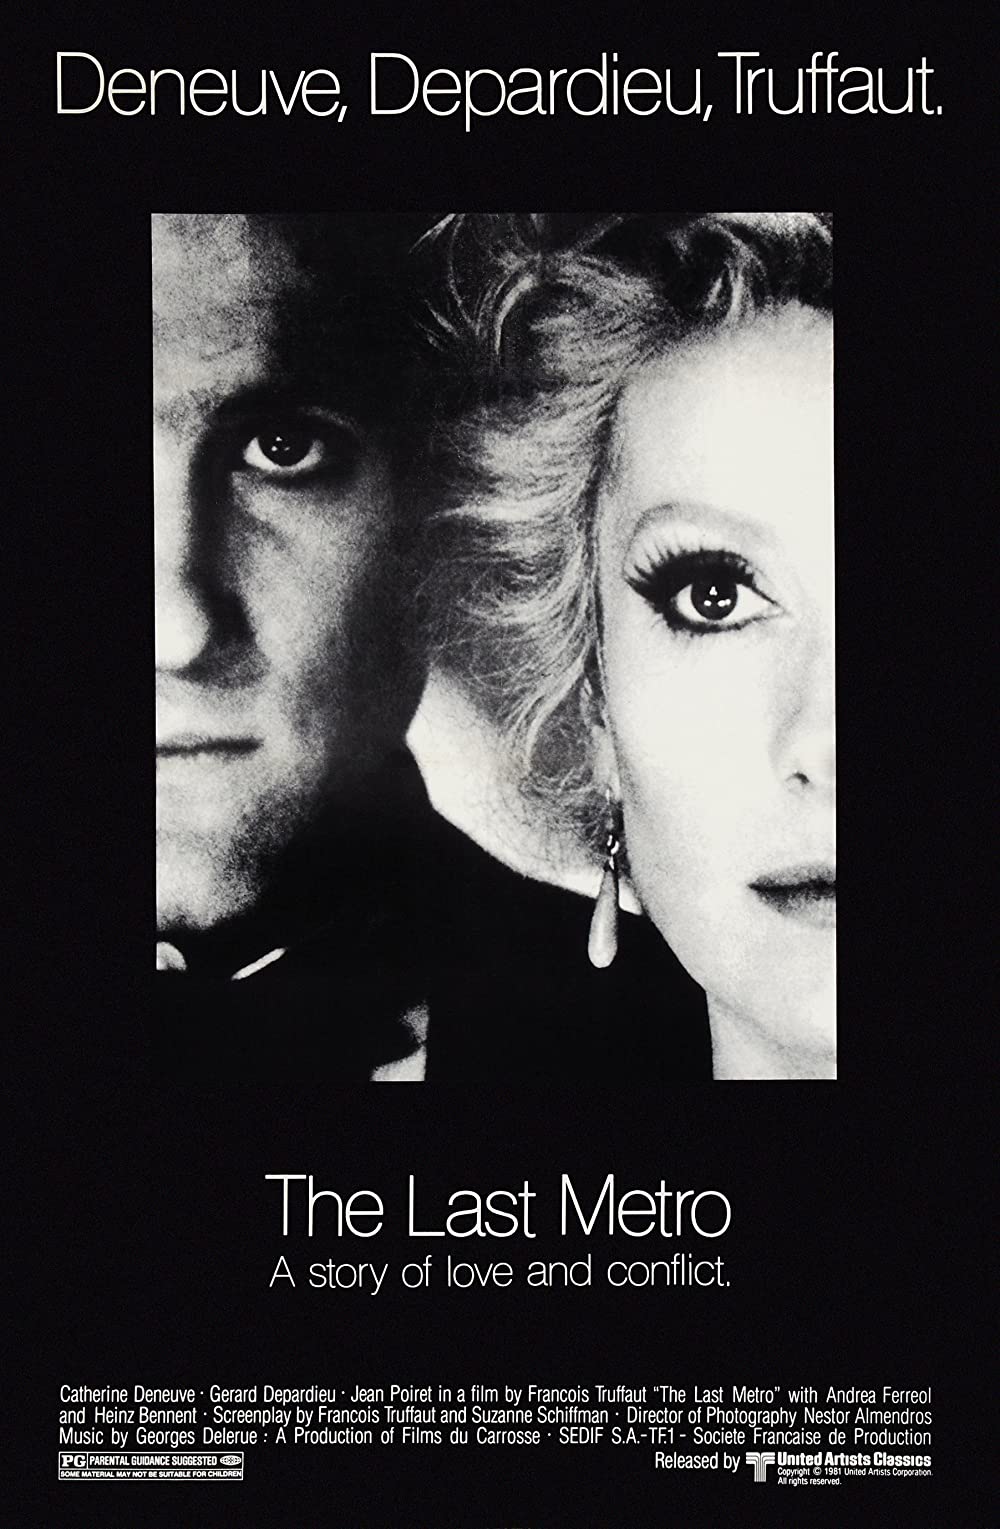 Filmbeschreibung zu Die letzte Metro